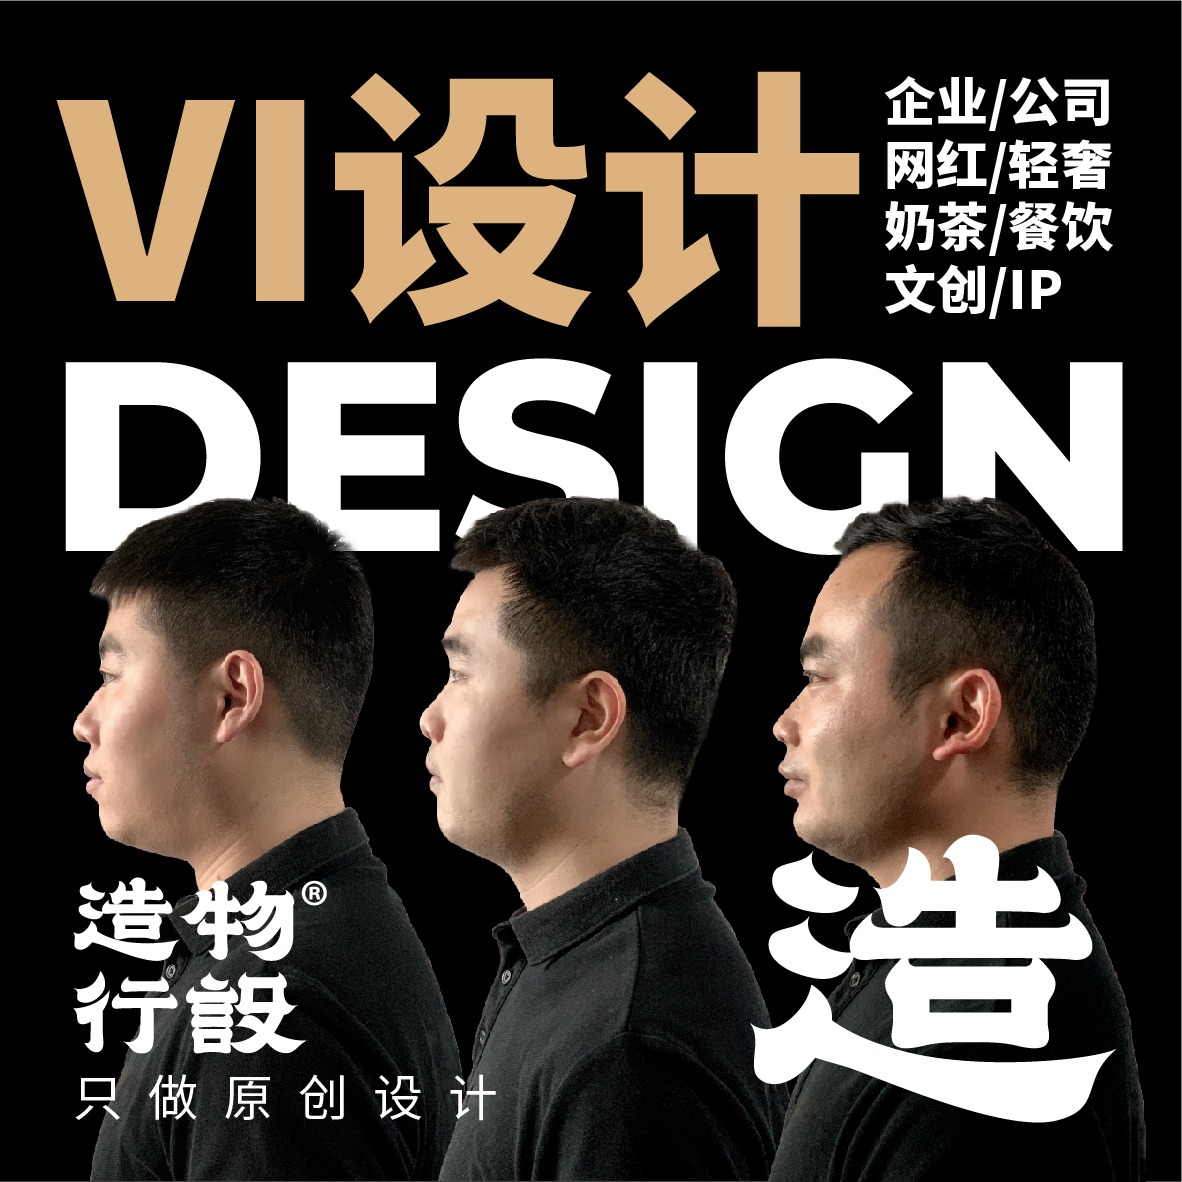 快消品餐饮企业vi设计全套定制设计公司vis品牌VI系统设计